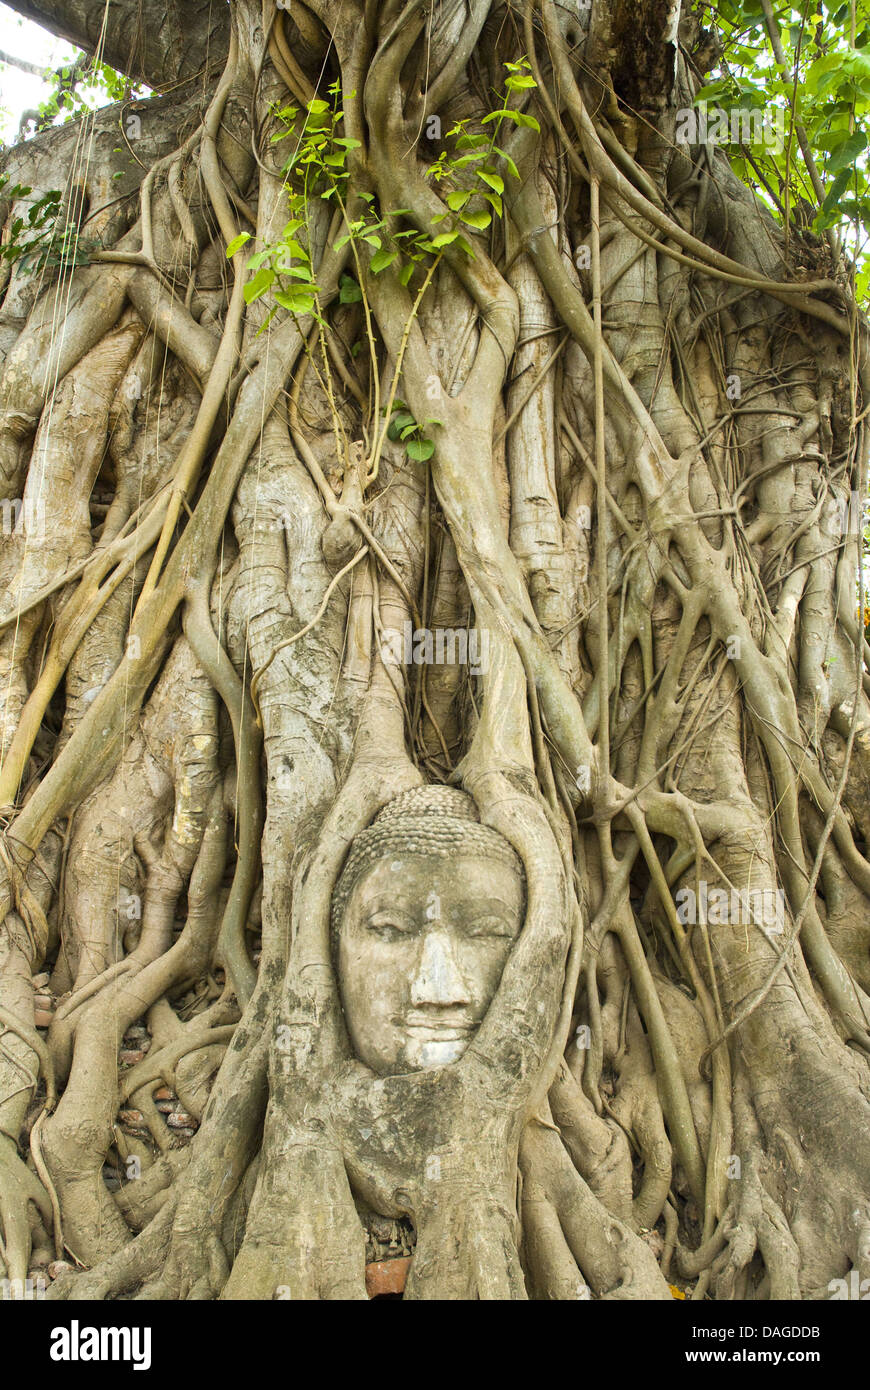 Portrait de bouddha entre les racines des arbres à l'ensemble du temple Wat Mahathat, Ayutthaya Ayutthaya, Thaïlande Banque D'Images